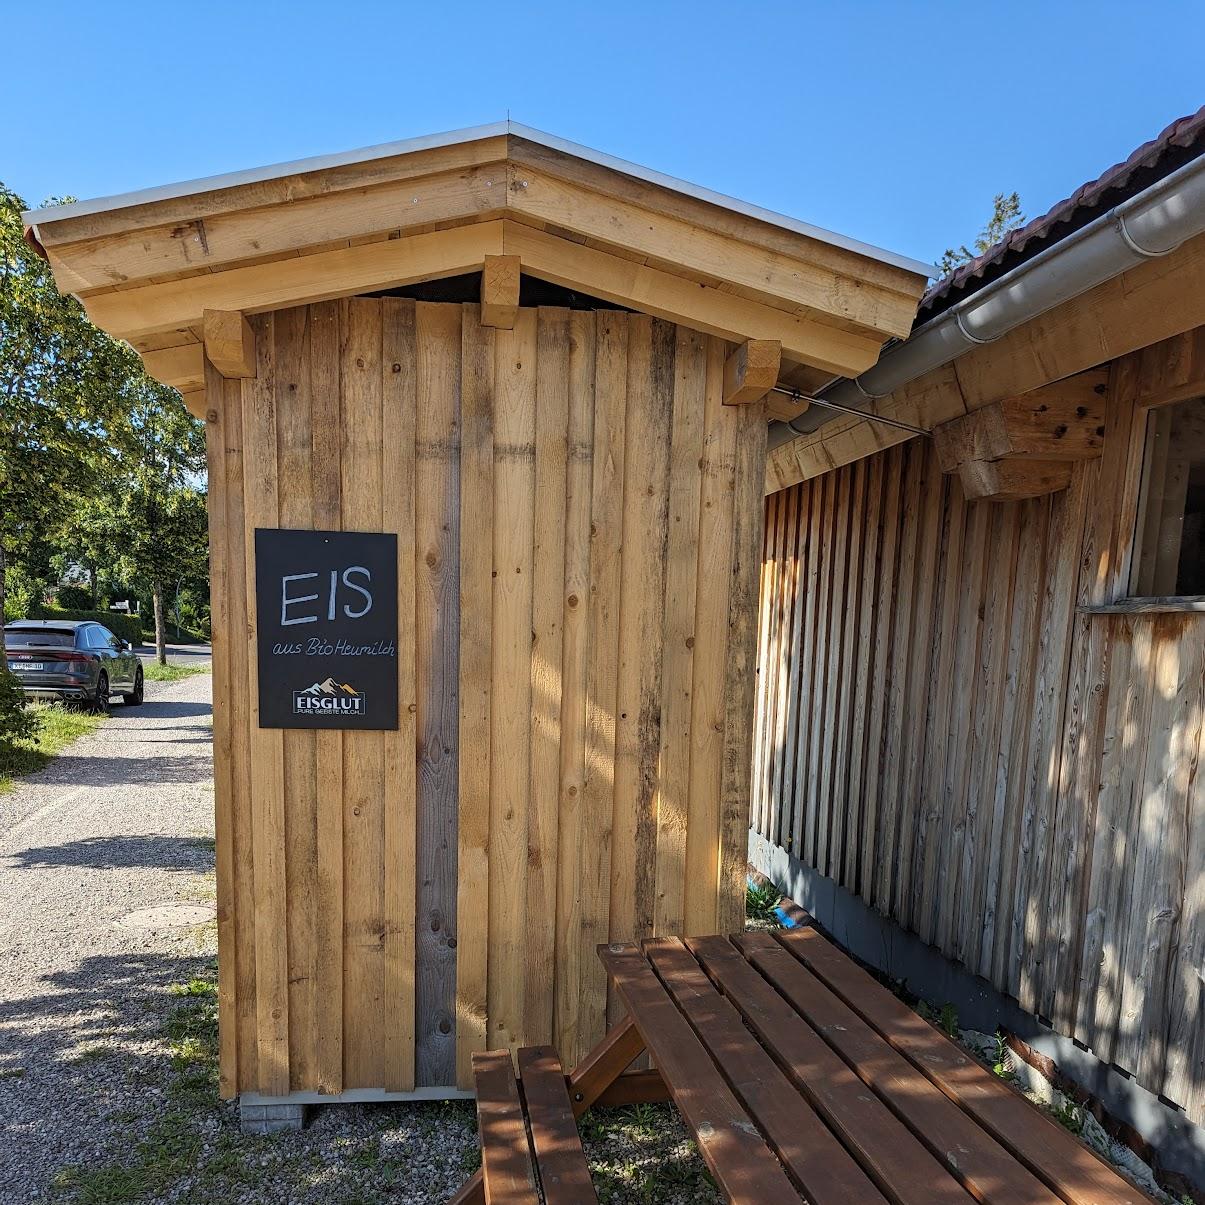 Restaurant "Eisglut - Eisautomat" in Buchenberg